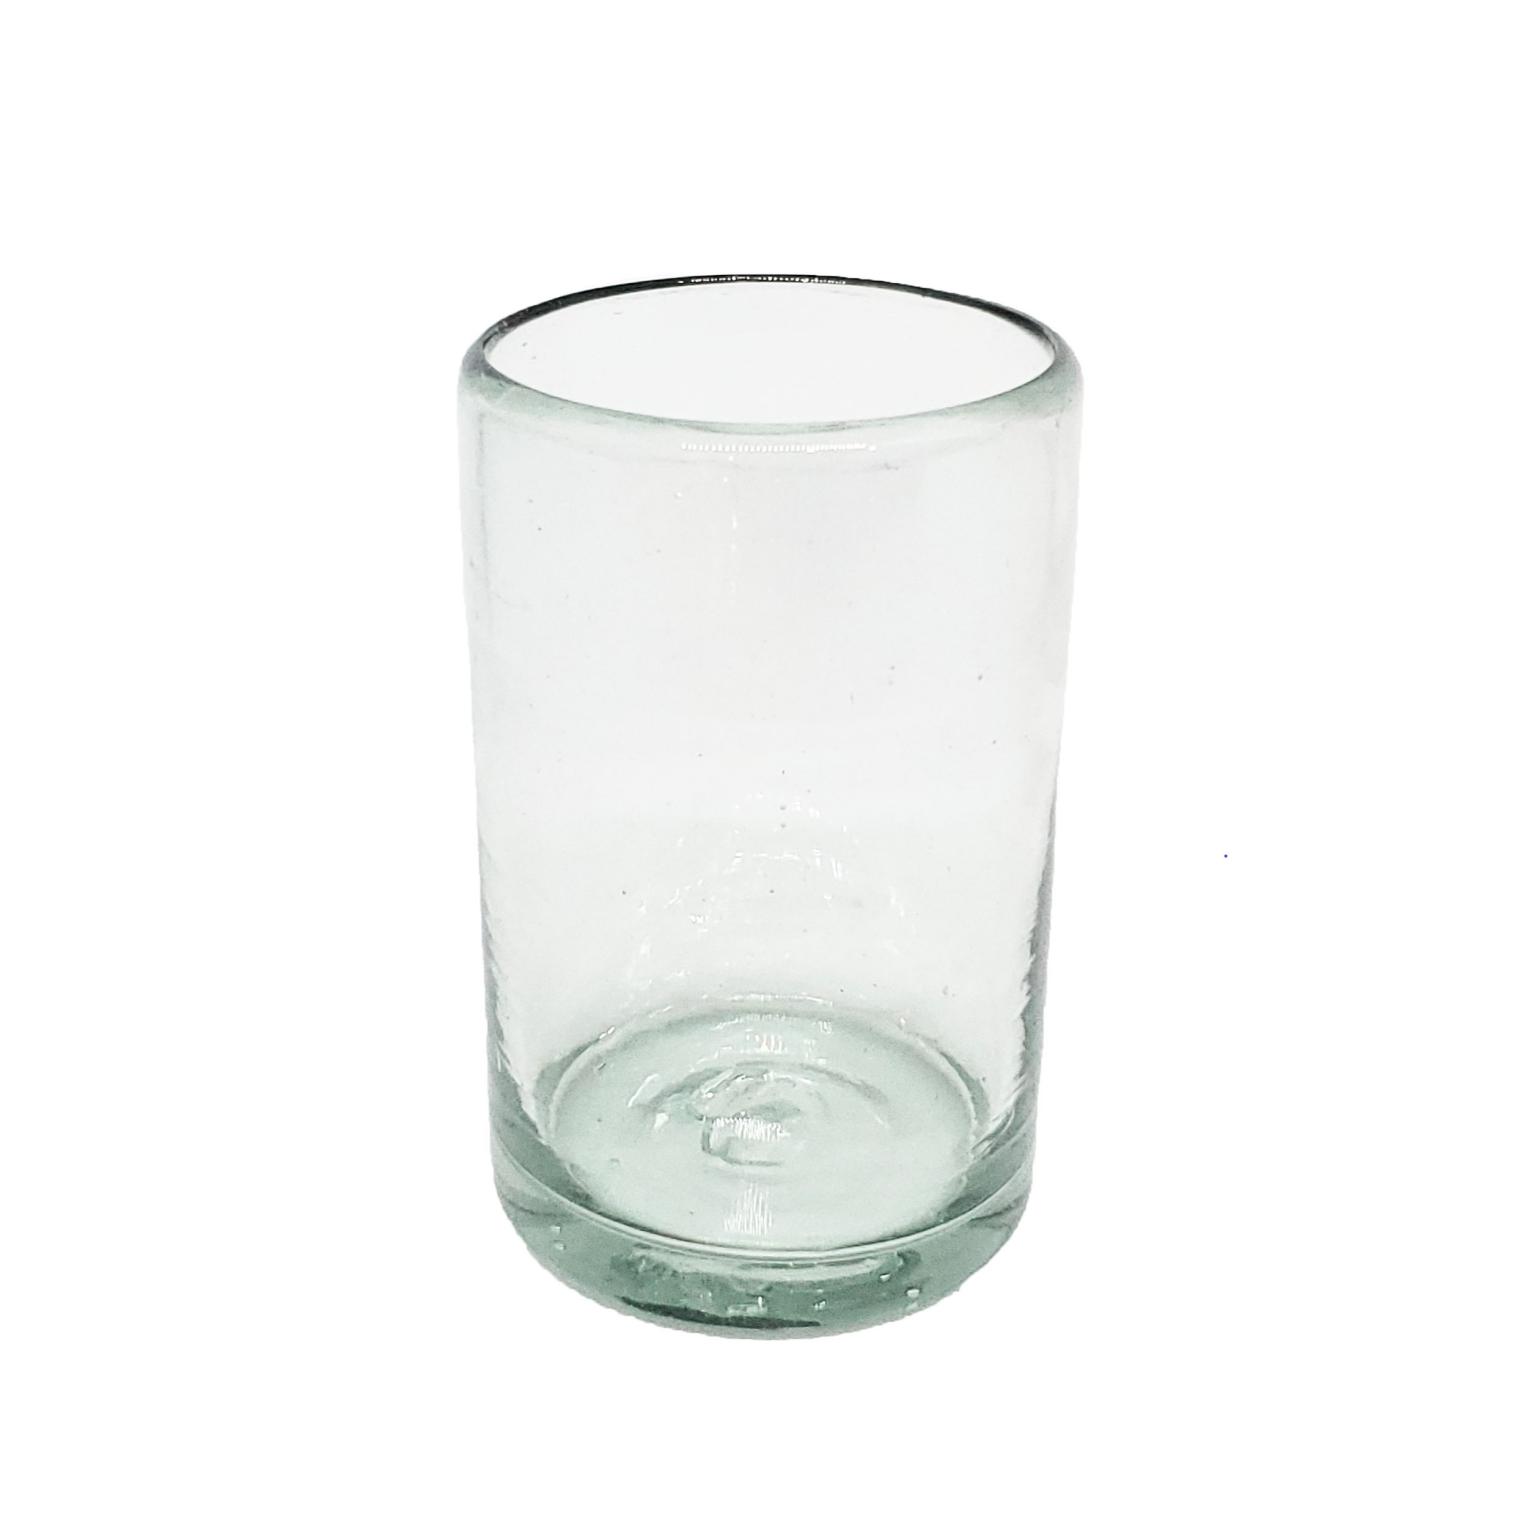 Novedades / vasos Jugo 9oz Transparentes / Éstos artesanales vasos le darán un toque clásico a su bebida favorita.